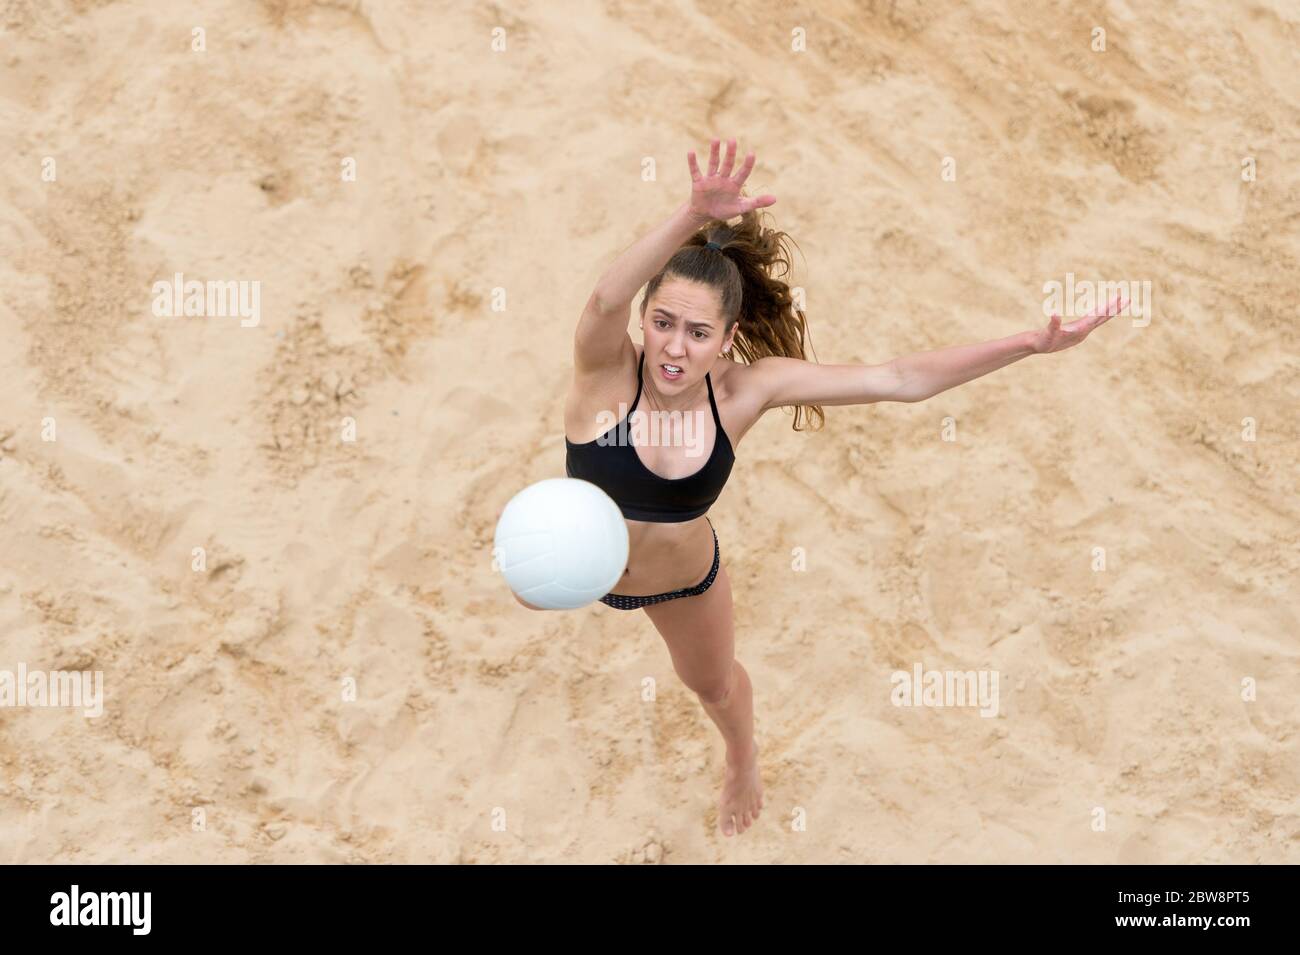 Junge Frau mit weißem Ball spielen Volleyball am Strand. Sommerurlaub und Sportkonzept Stockfoto